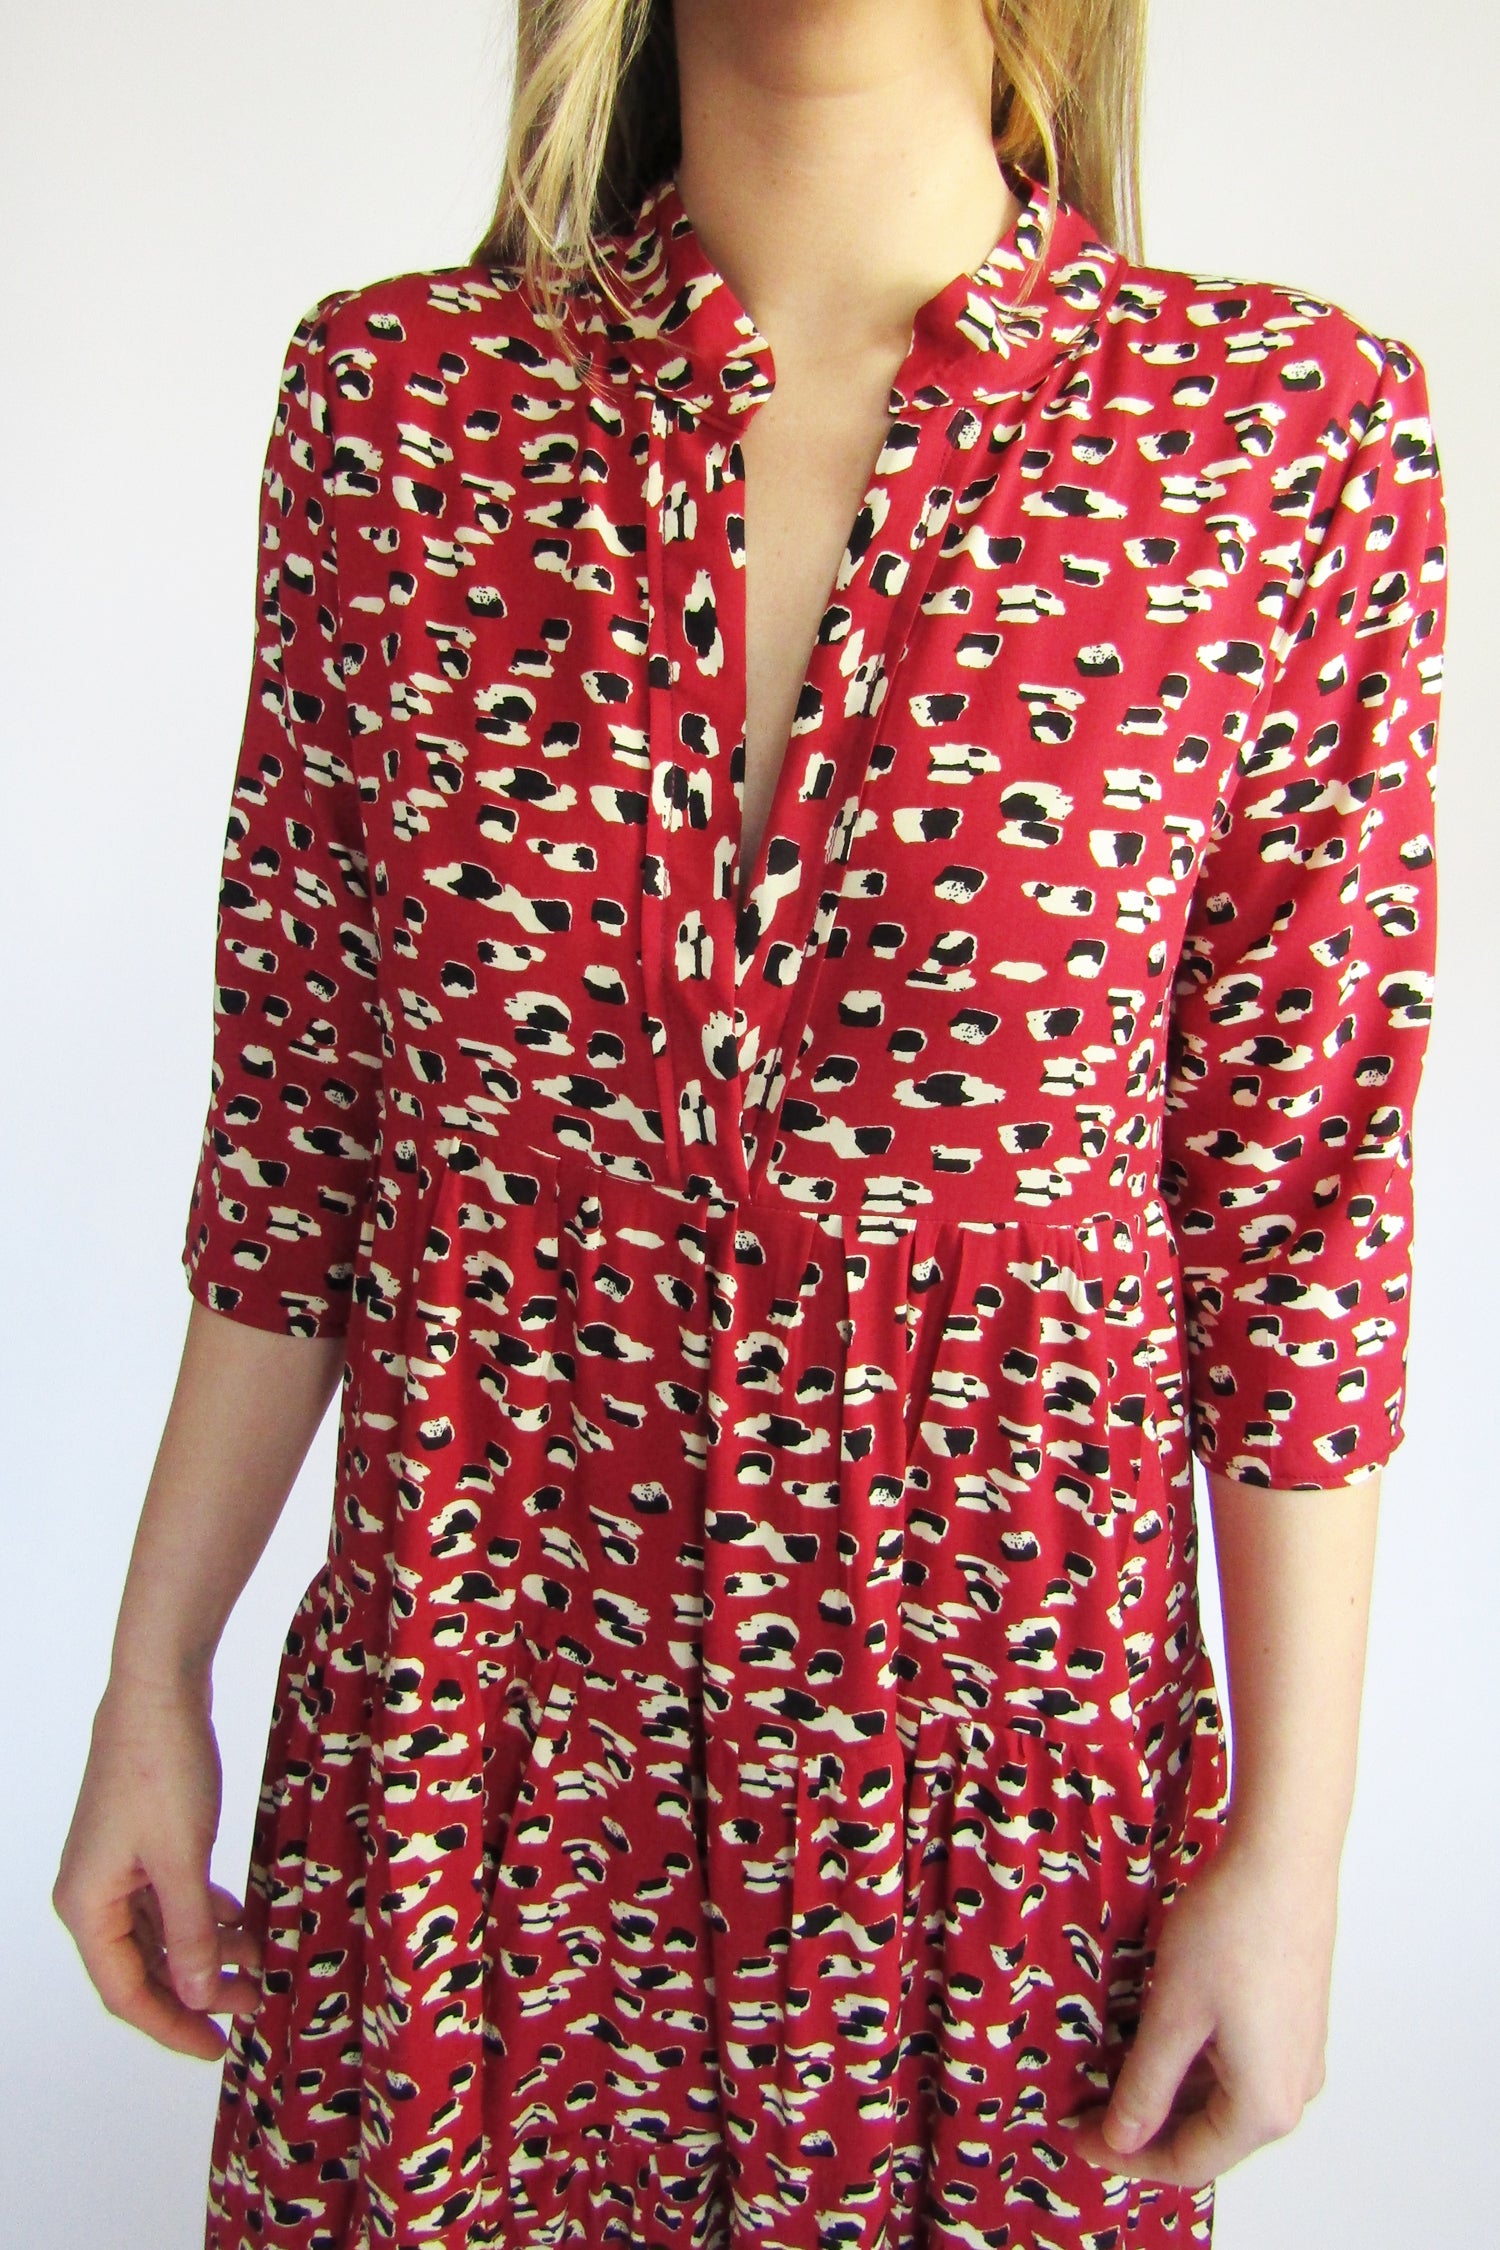 Red Leopard Print Tiered Boho Clara Maxi Dress